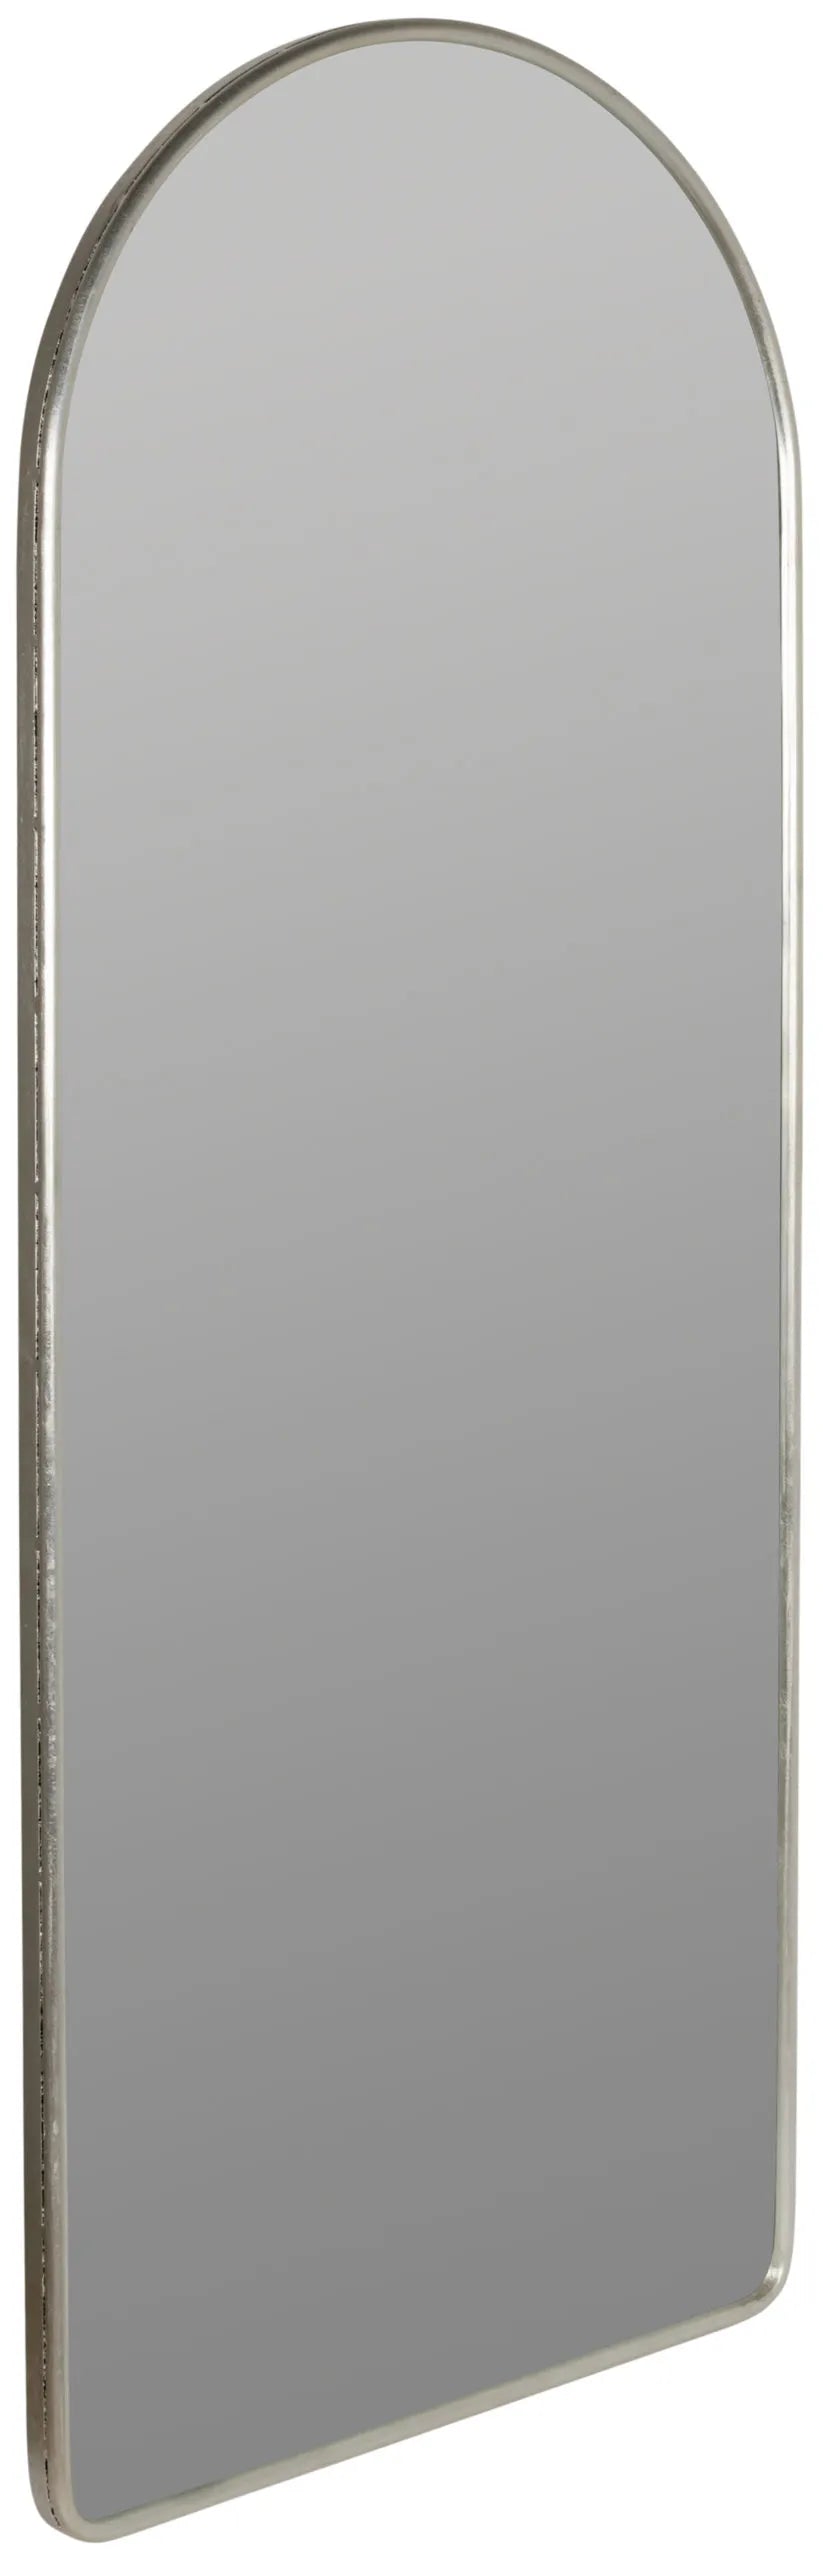 Colca Floor Mirror- Silver